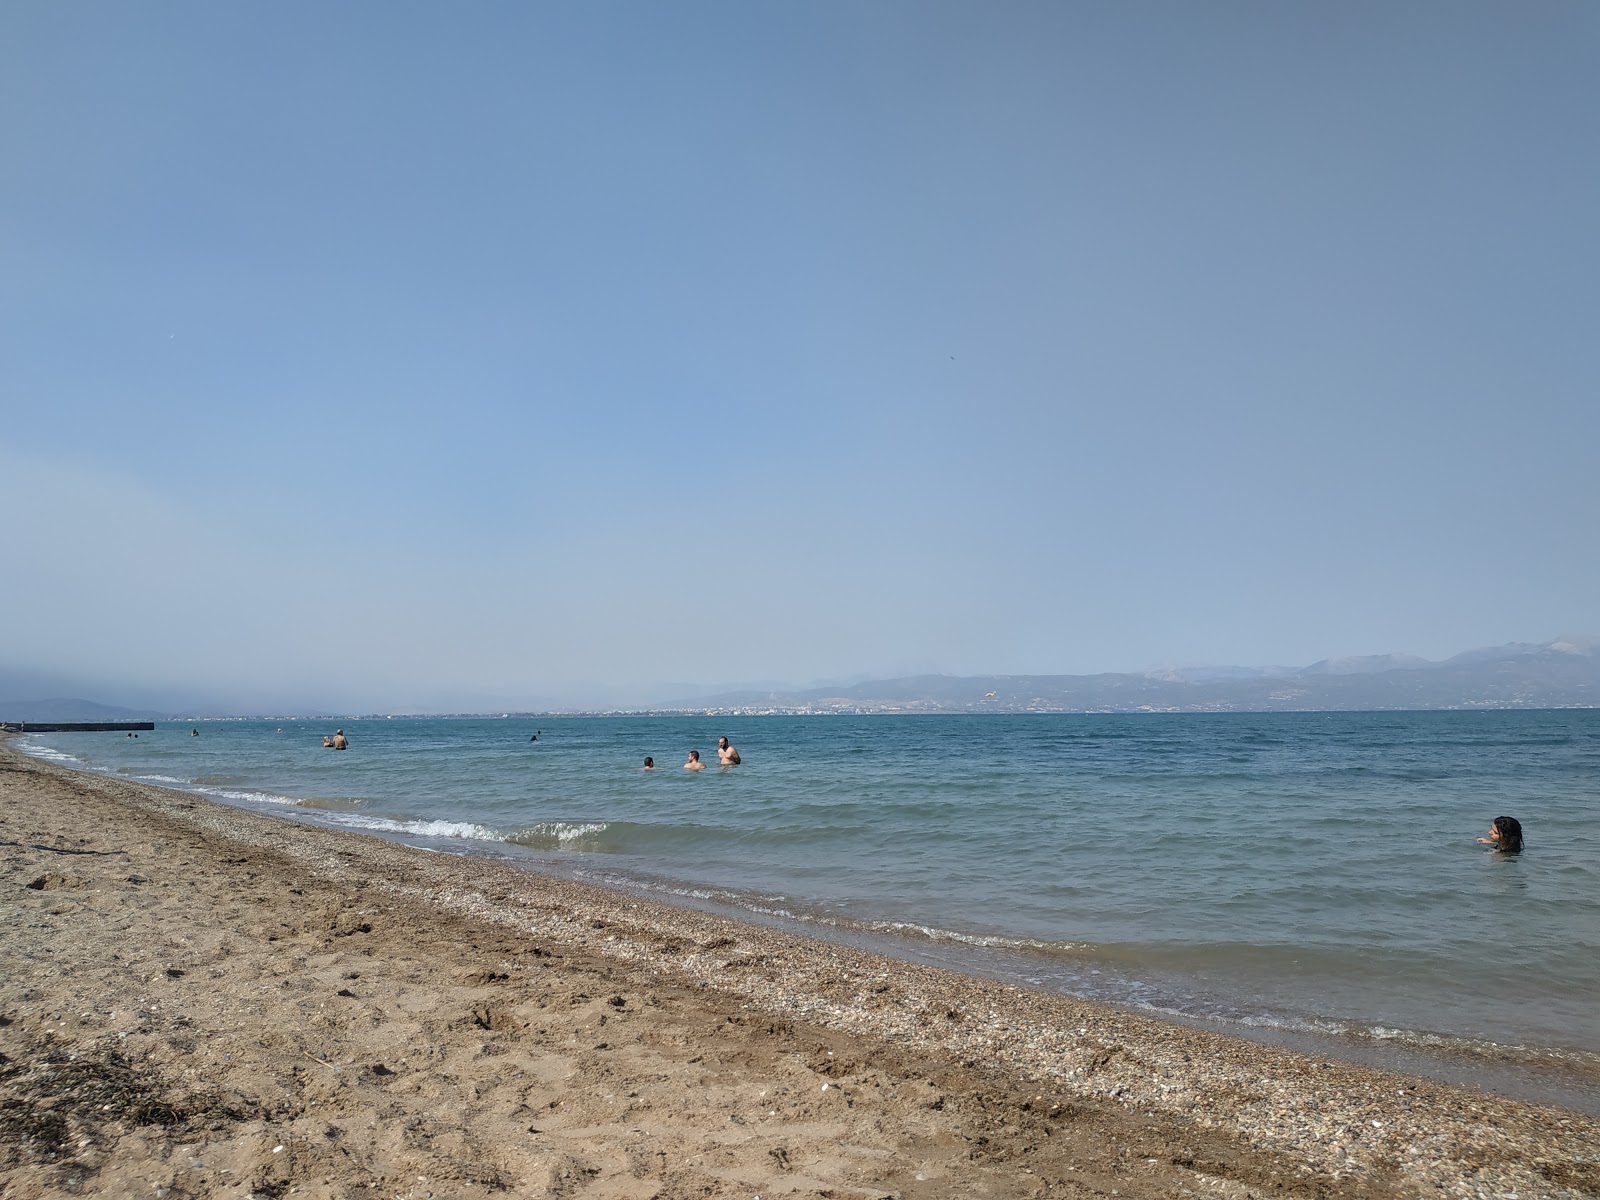 Avlidas beach'in fotoğrafı siyah kum ve çakıl yüzey ile